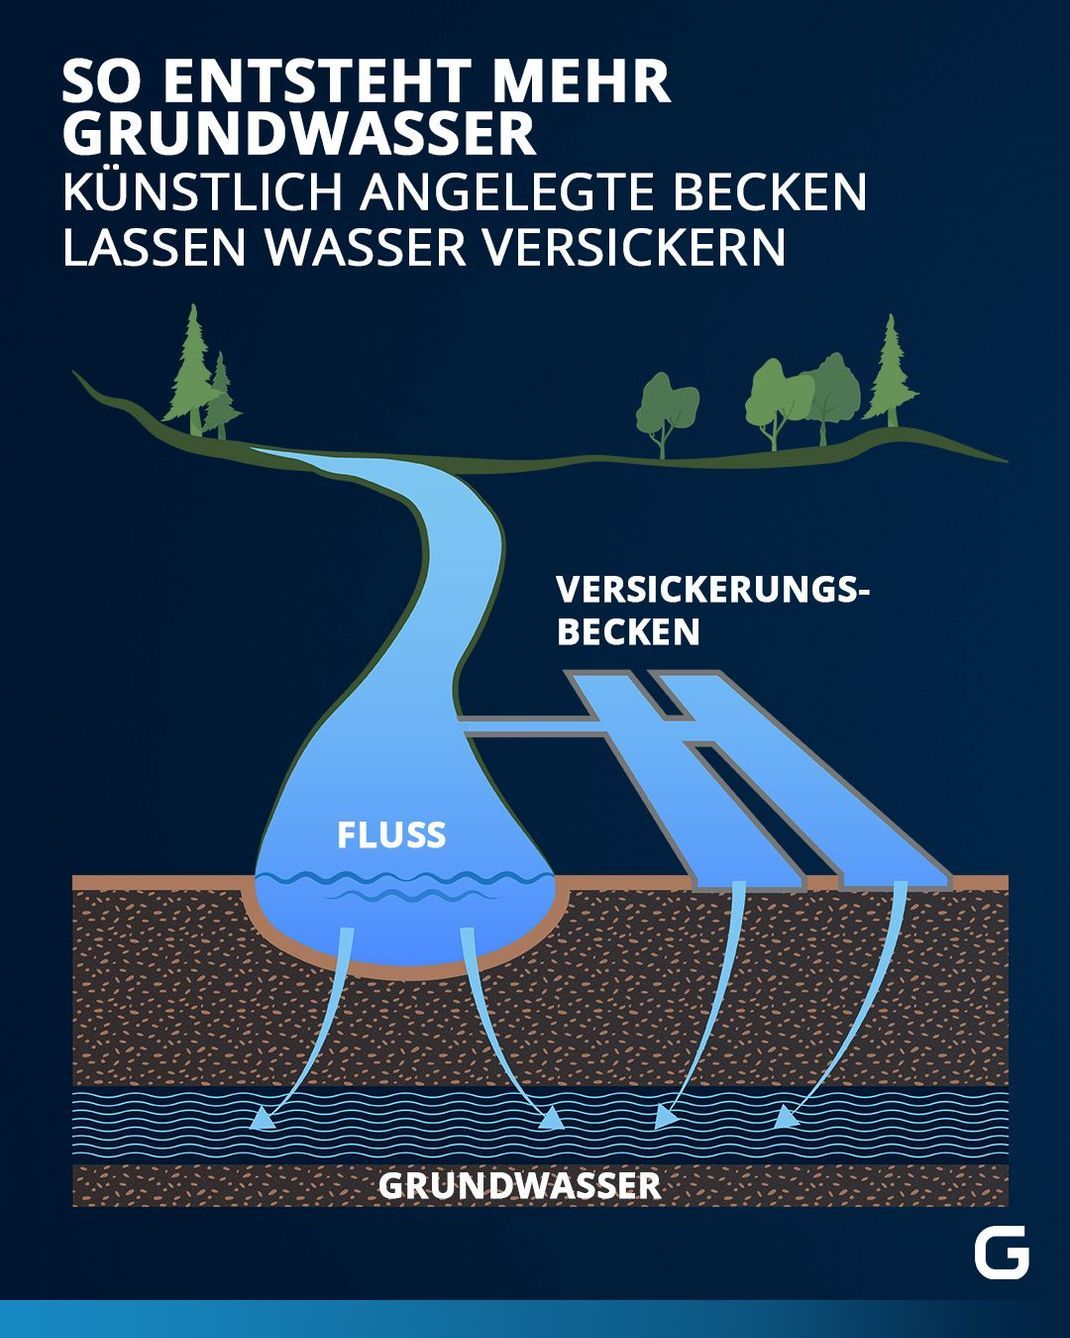 Mit Hilfe von Versickerungsbecken wird Grundwasser nahe einem Fluss natürlich angereichert.